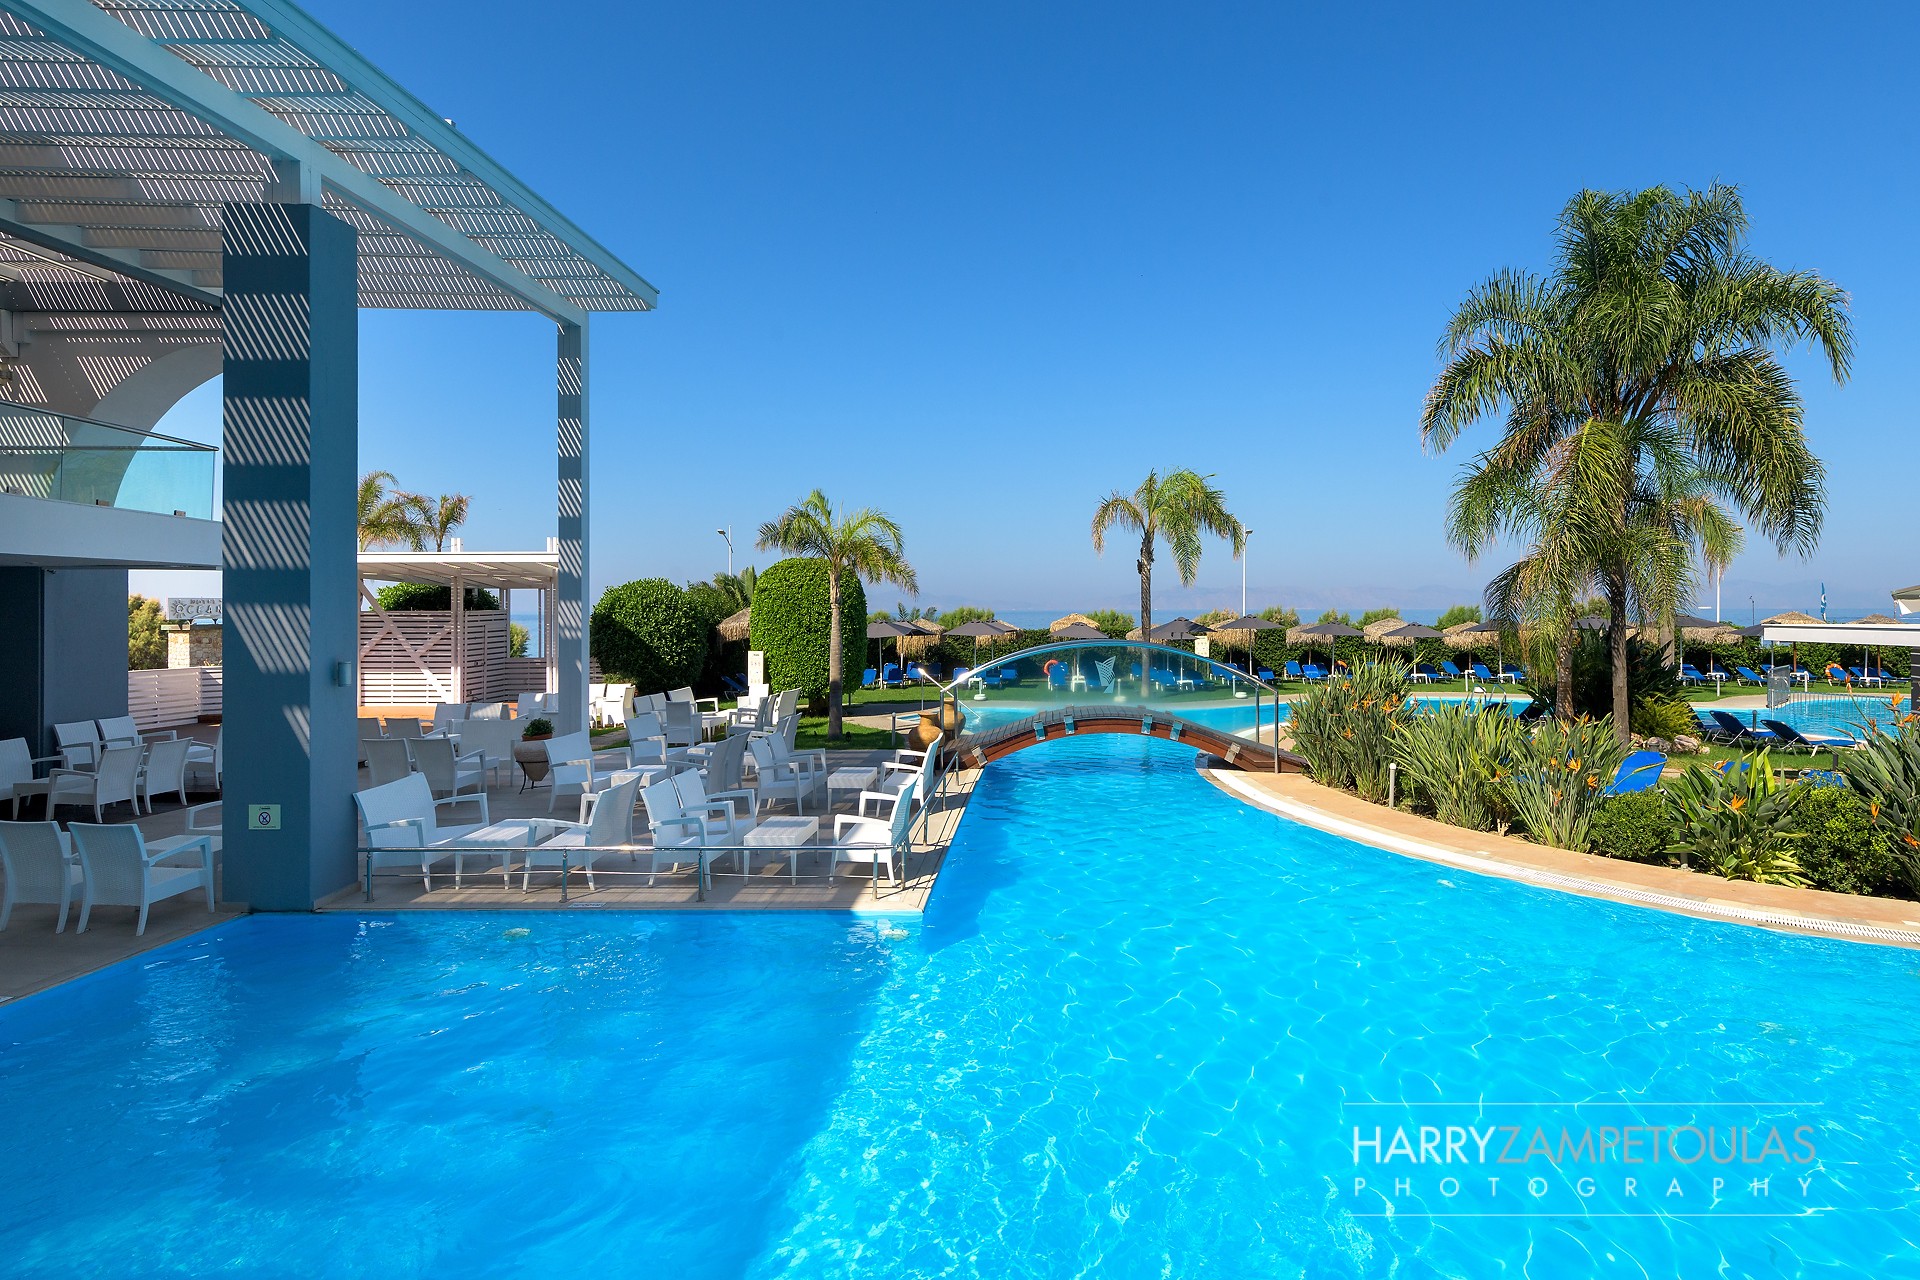 Oceanis-Hotel-Rhodes-Harry-Zampetoulas-Photography-20 Oceanis Hotel Rhodes - Φωτογράφιση Ξενοδοχείου Χάρης Ζαμπετούλας 